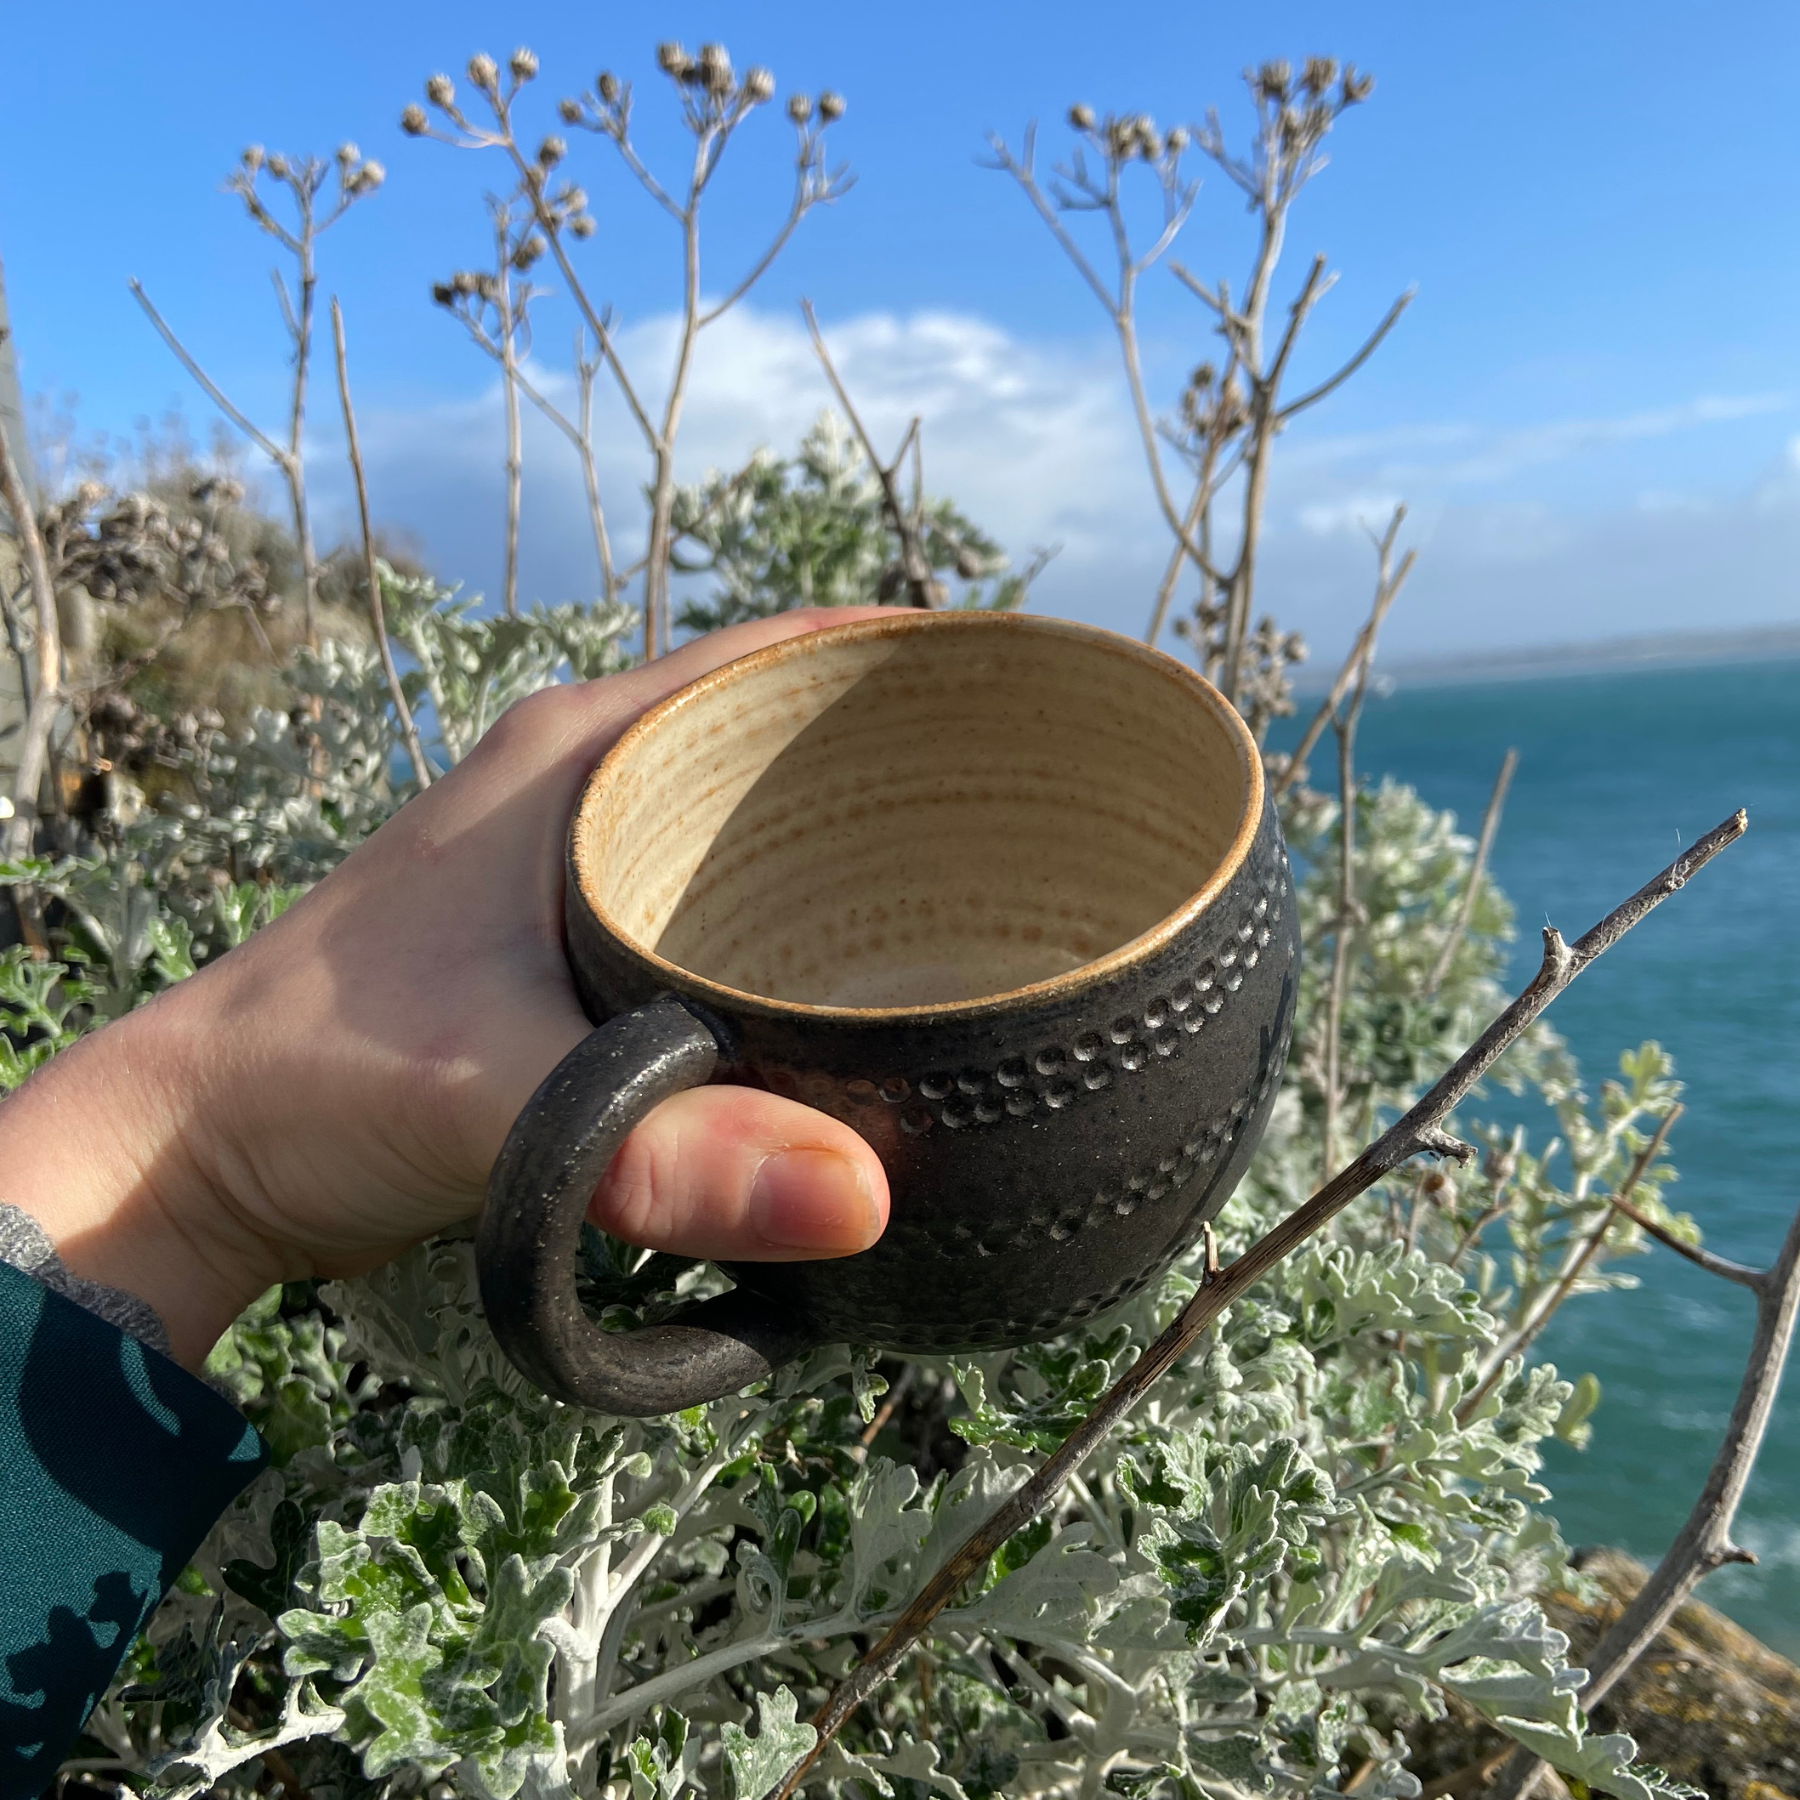 Gilliflower Pottery - Fireflower Mug